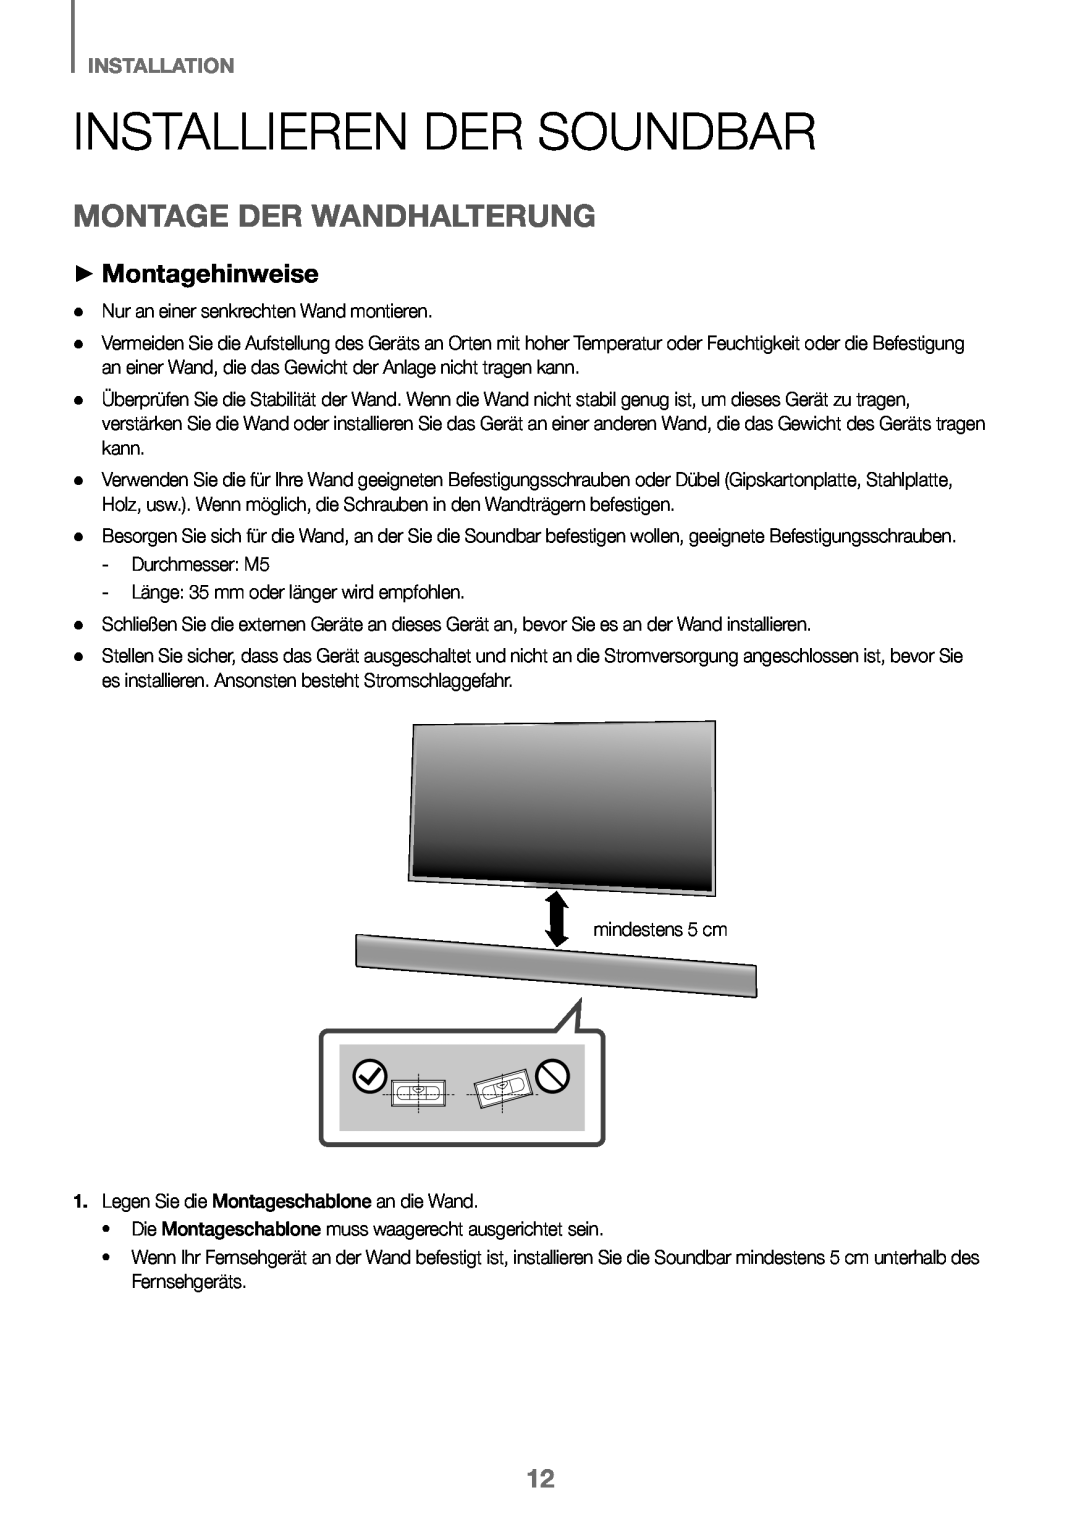 Samsung HW-J450/ZF, HW-K450/EN manual Installieren Der Soundbar, Montage Der Wandhalterung, ++Montagehinweise, Installation 